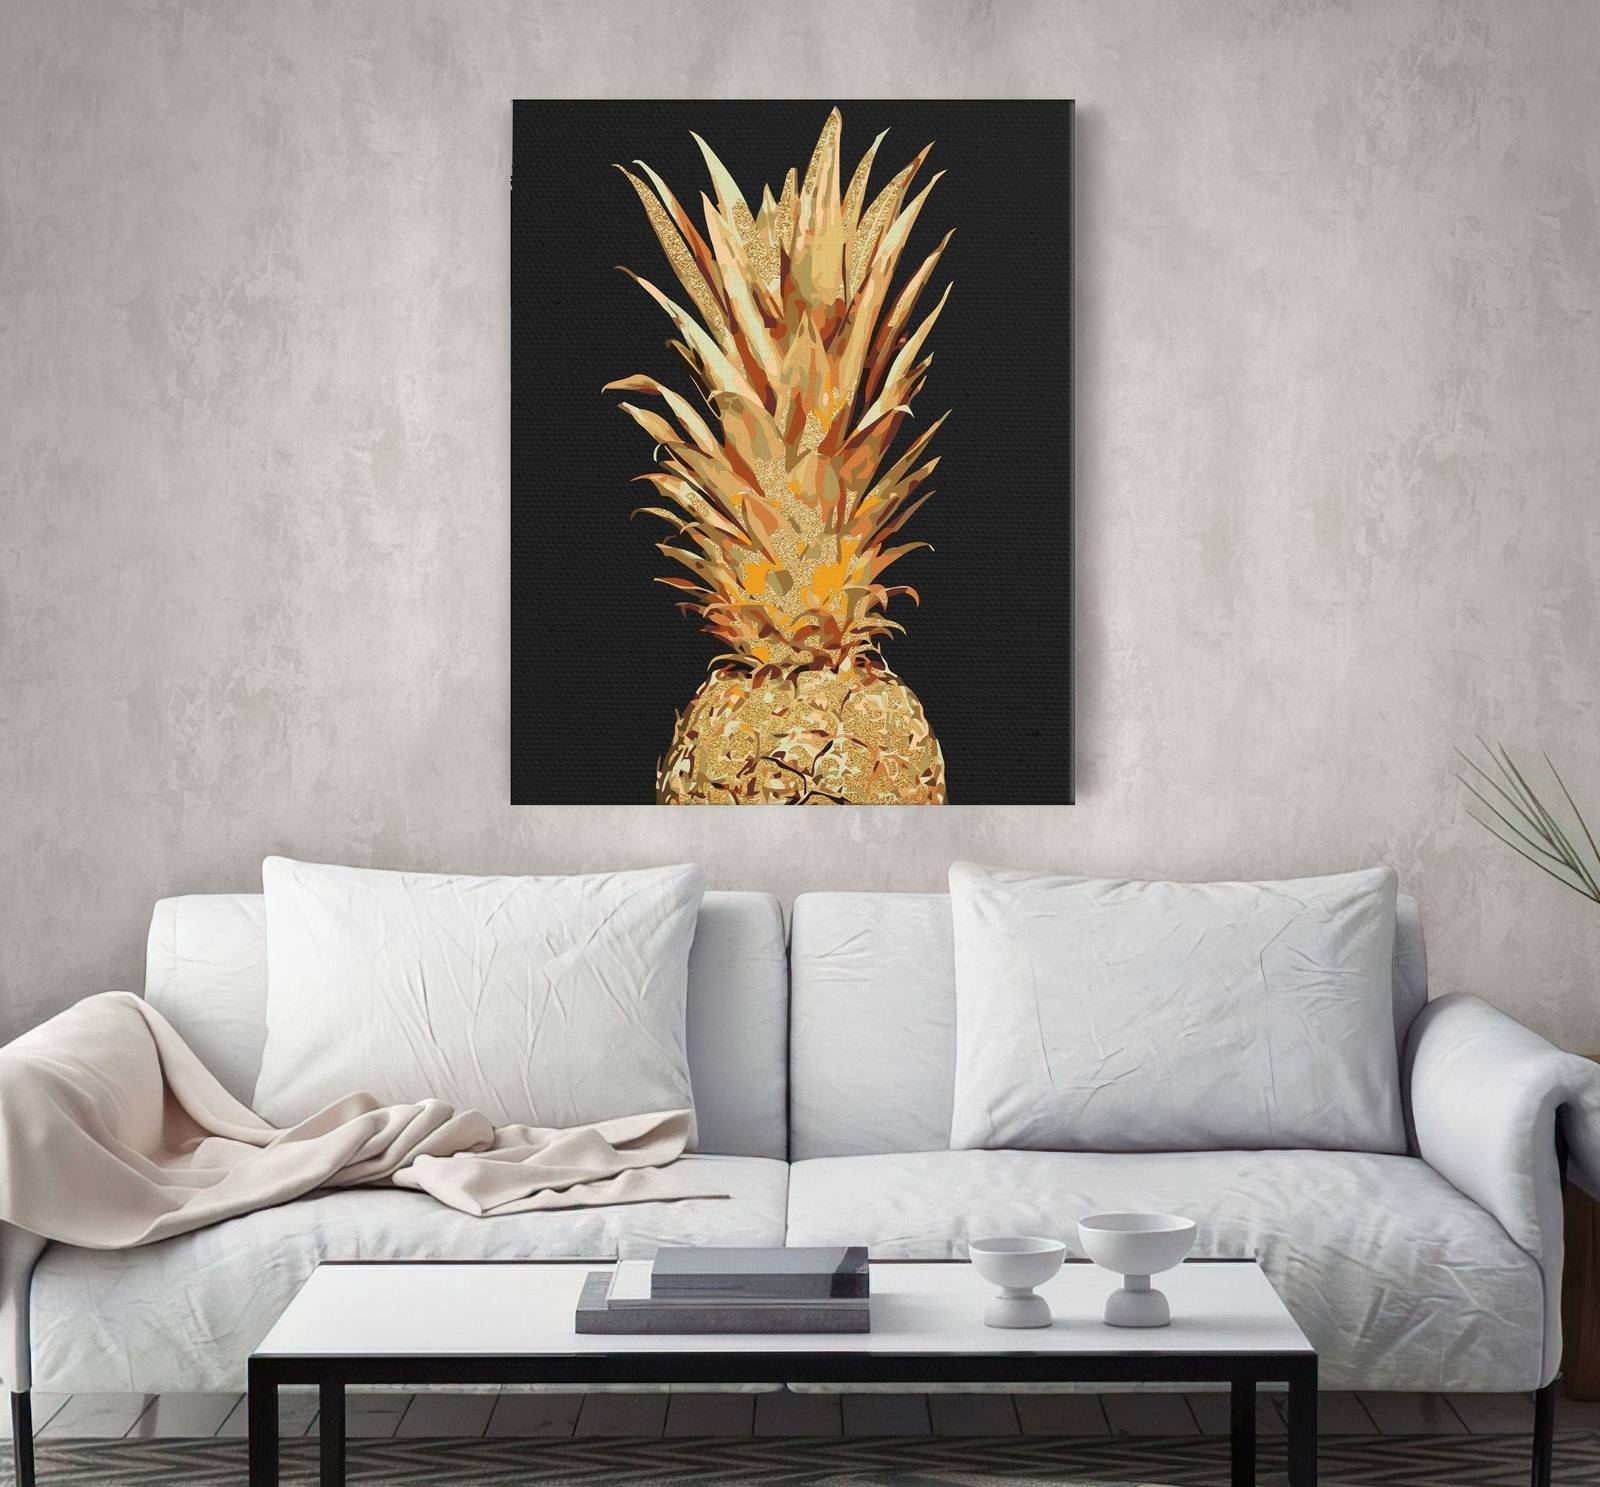 Arany ananász